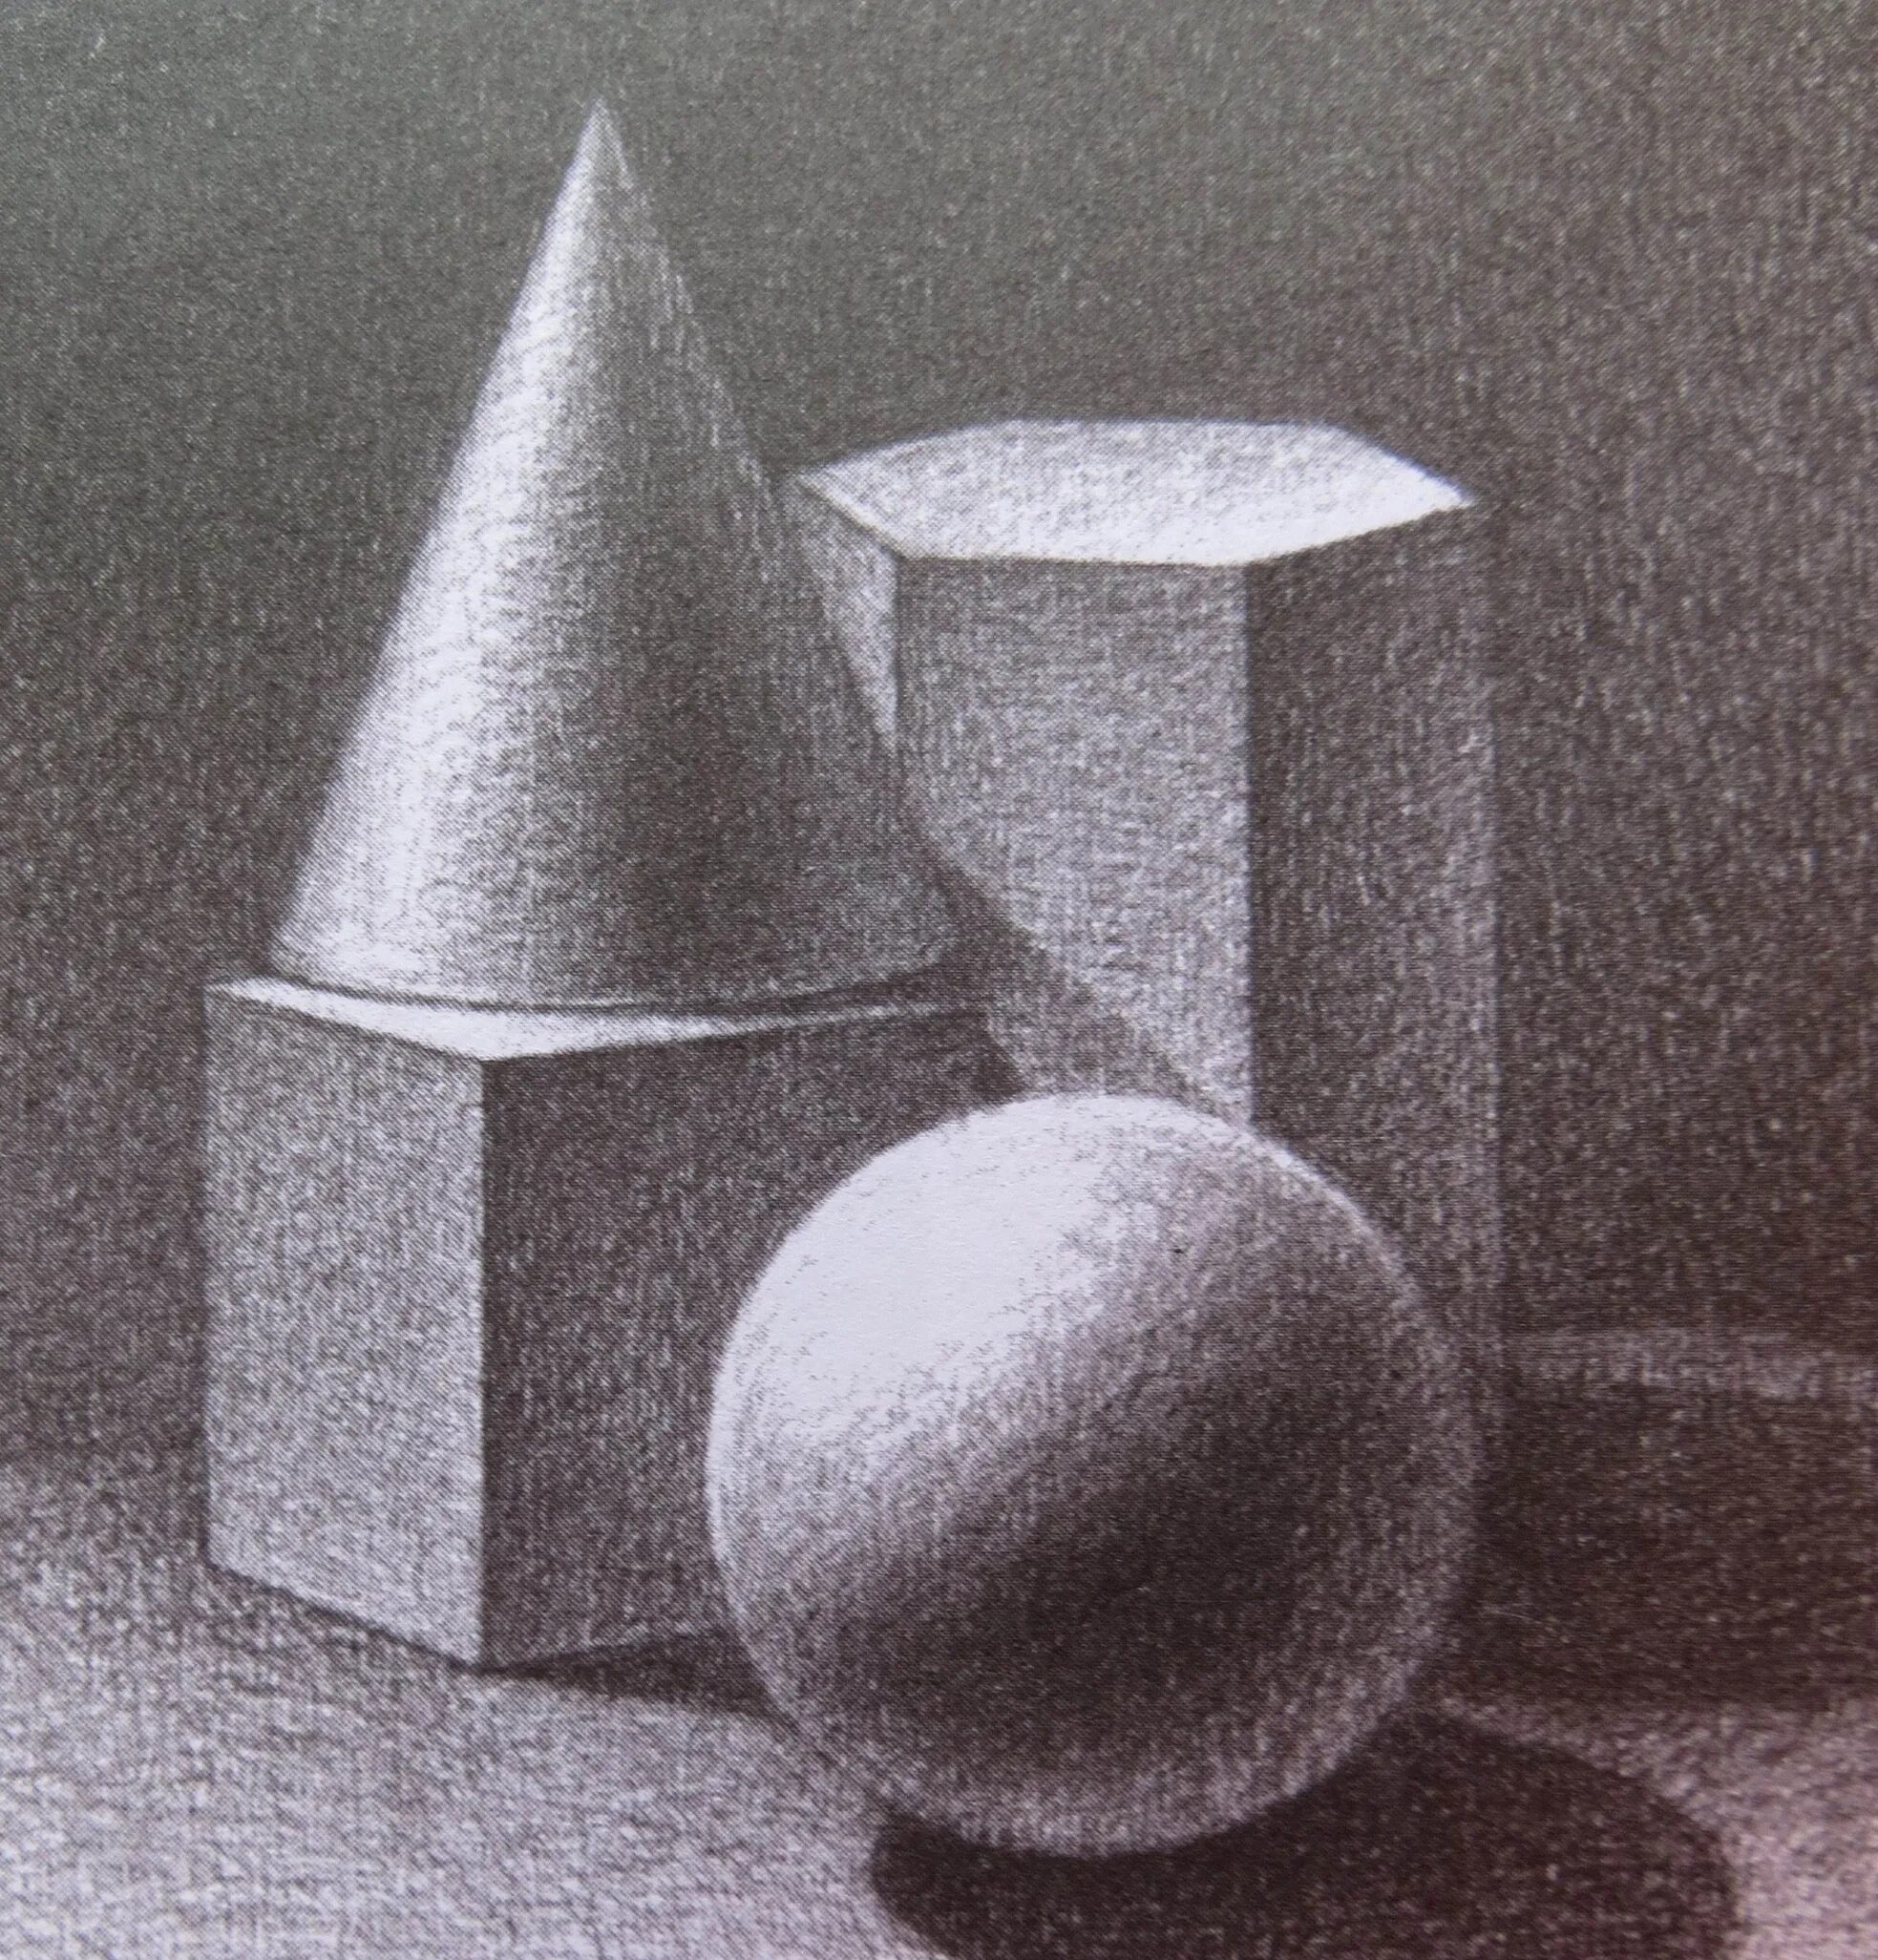 Светотень шар, конус, цилиндр, куб. Конус куб и цилиндр светотенью. Шар куб и цилиндр светотенью. Светотени в рисунке карандашом геометрические фигуры.